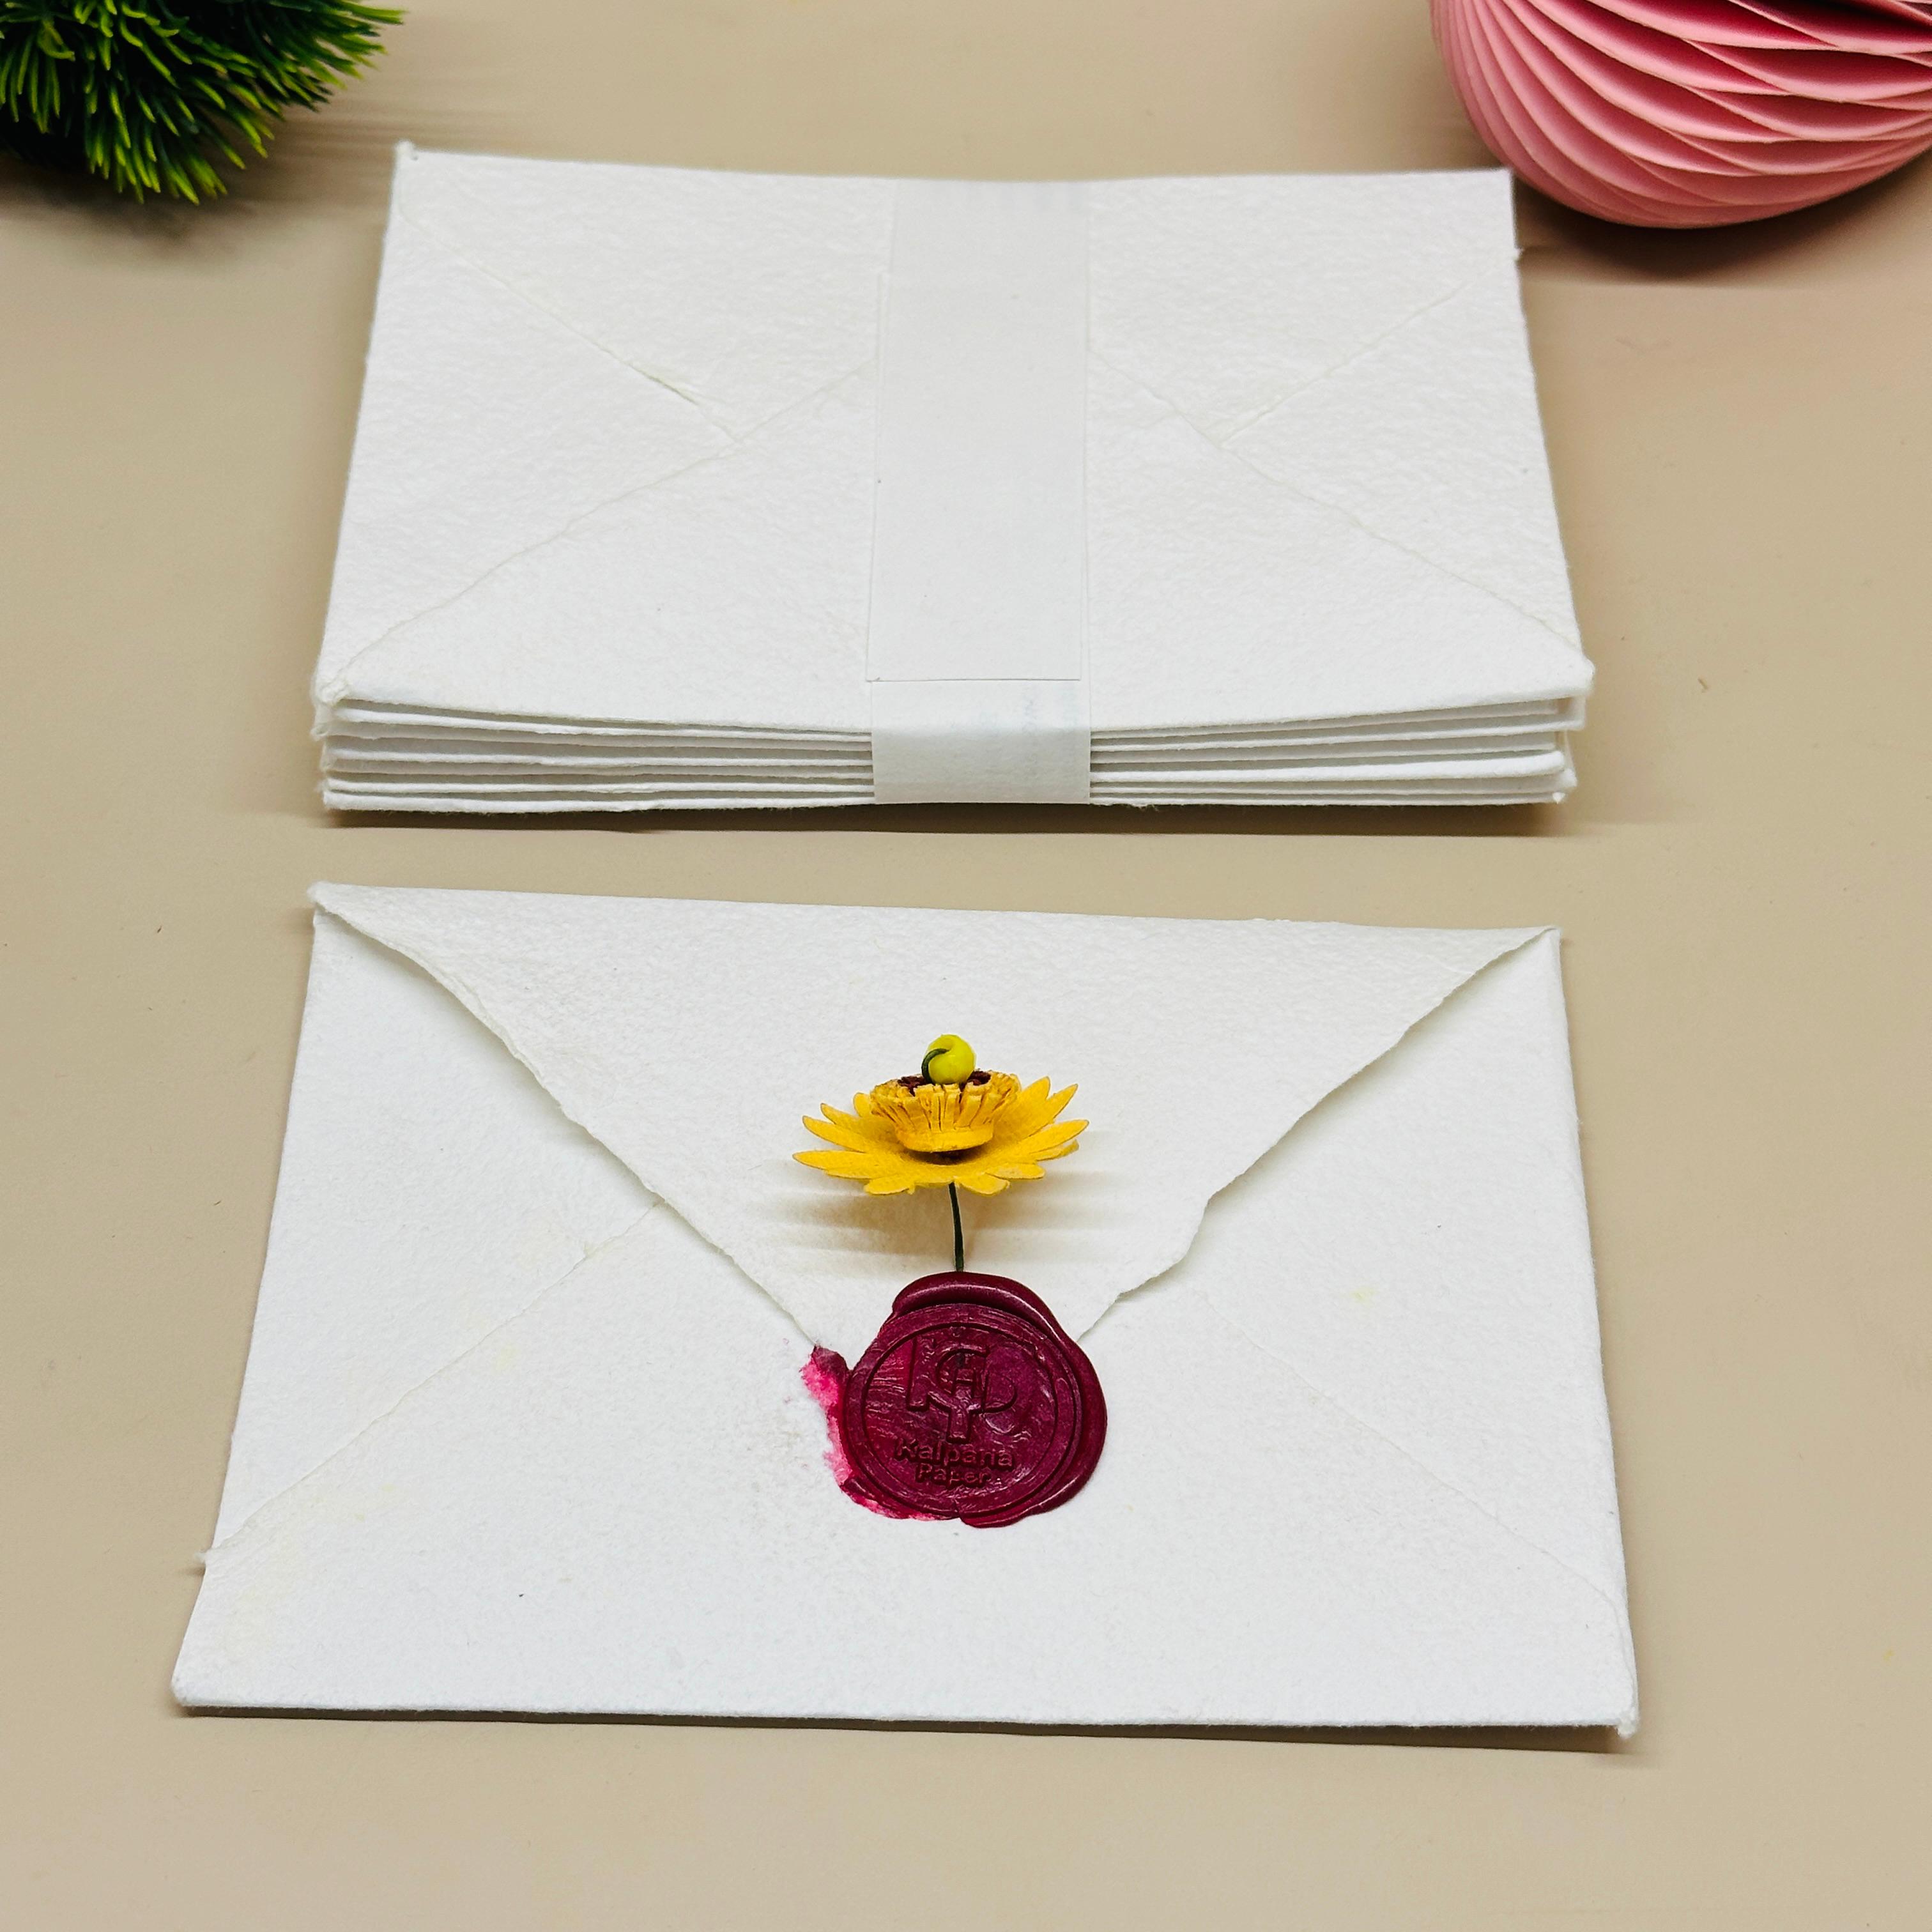 Deckle Edge paper envelop cards 